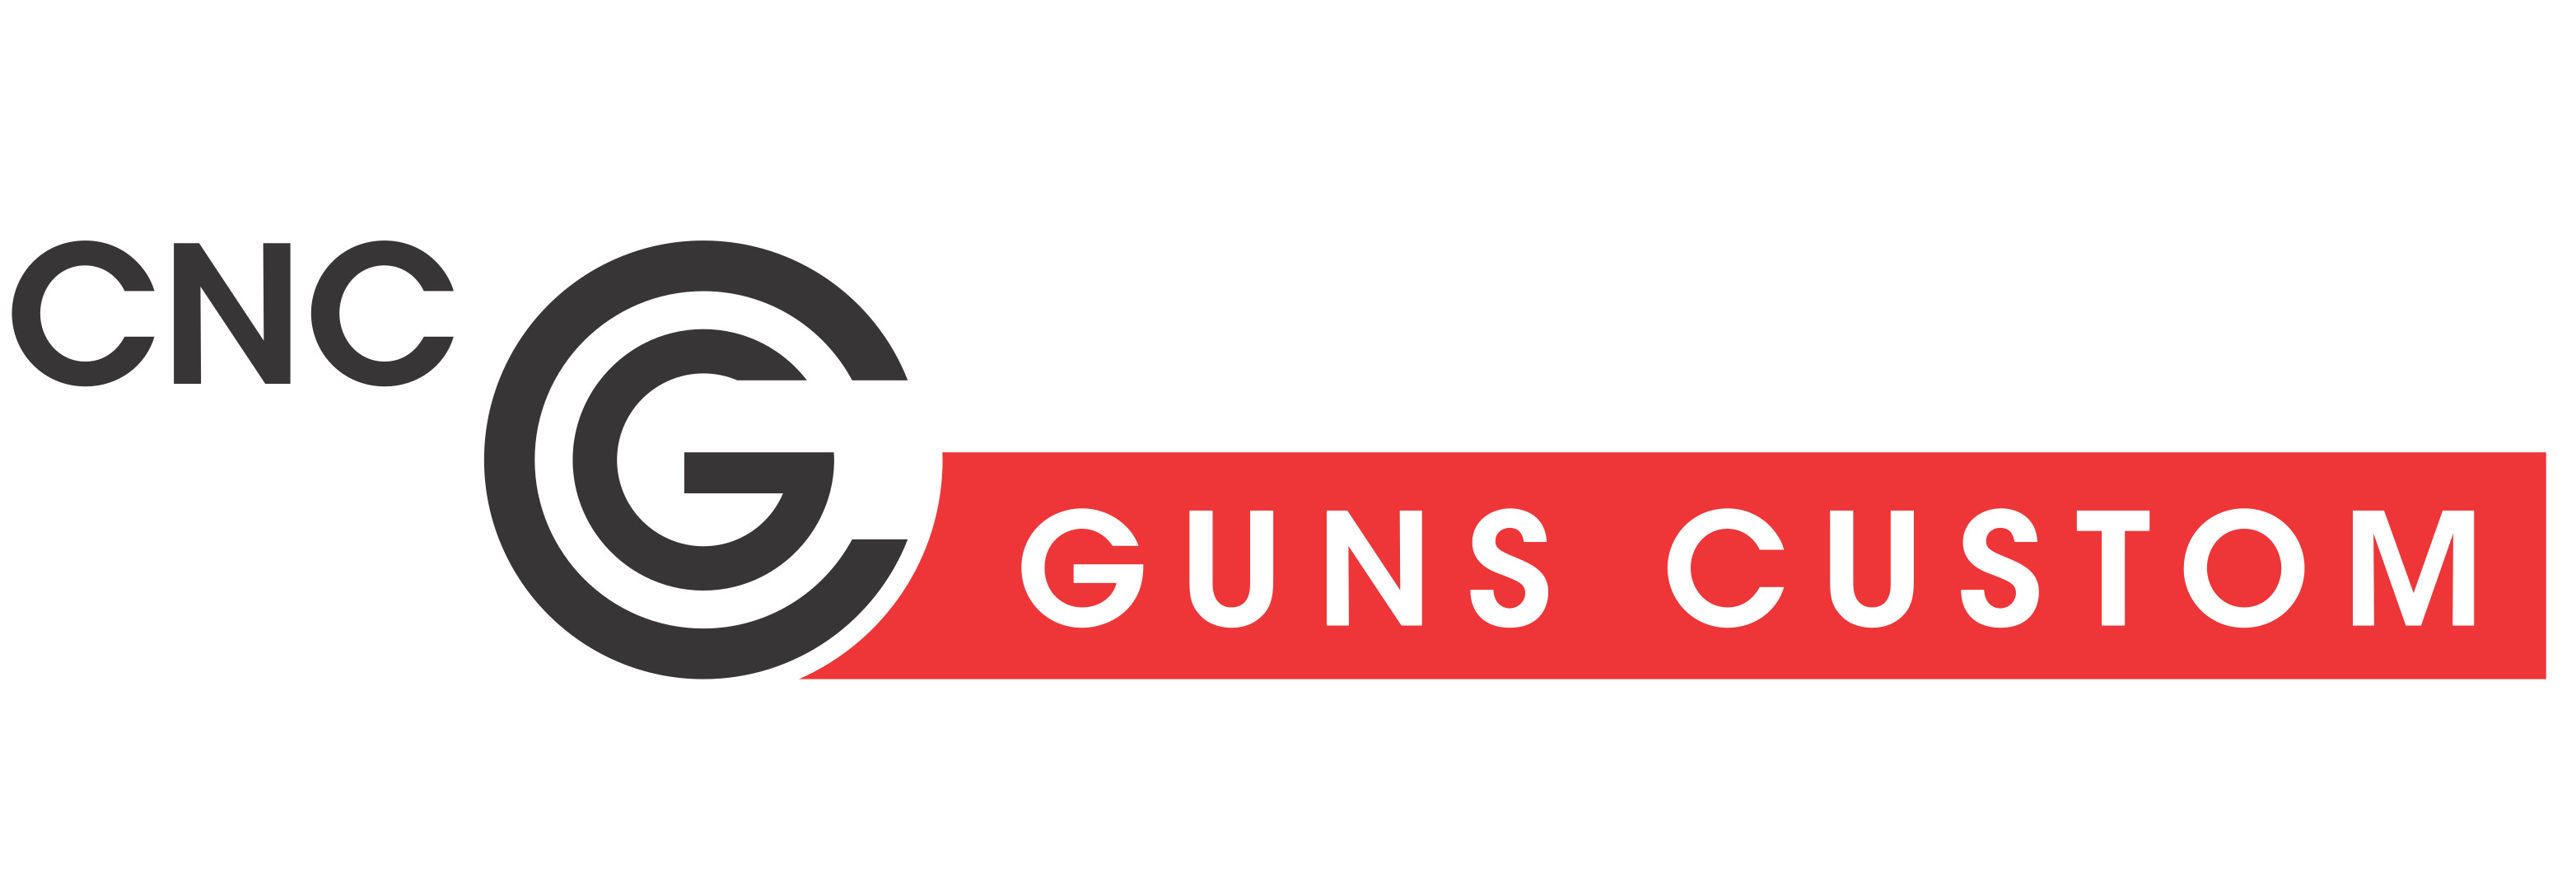 CNC Guns custom